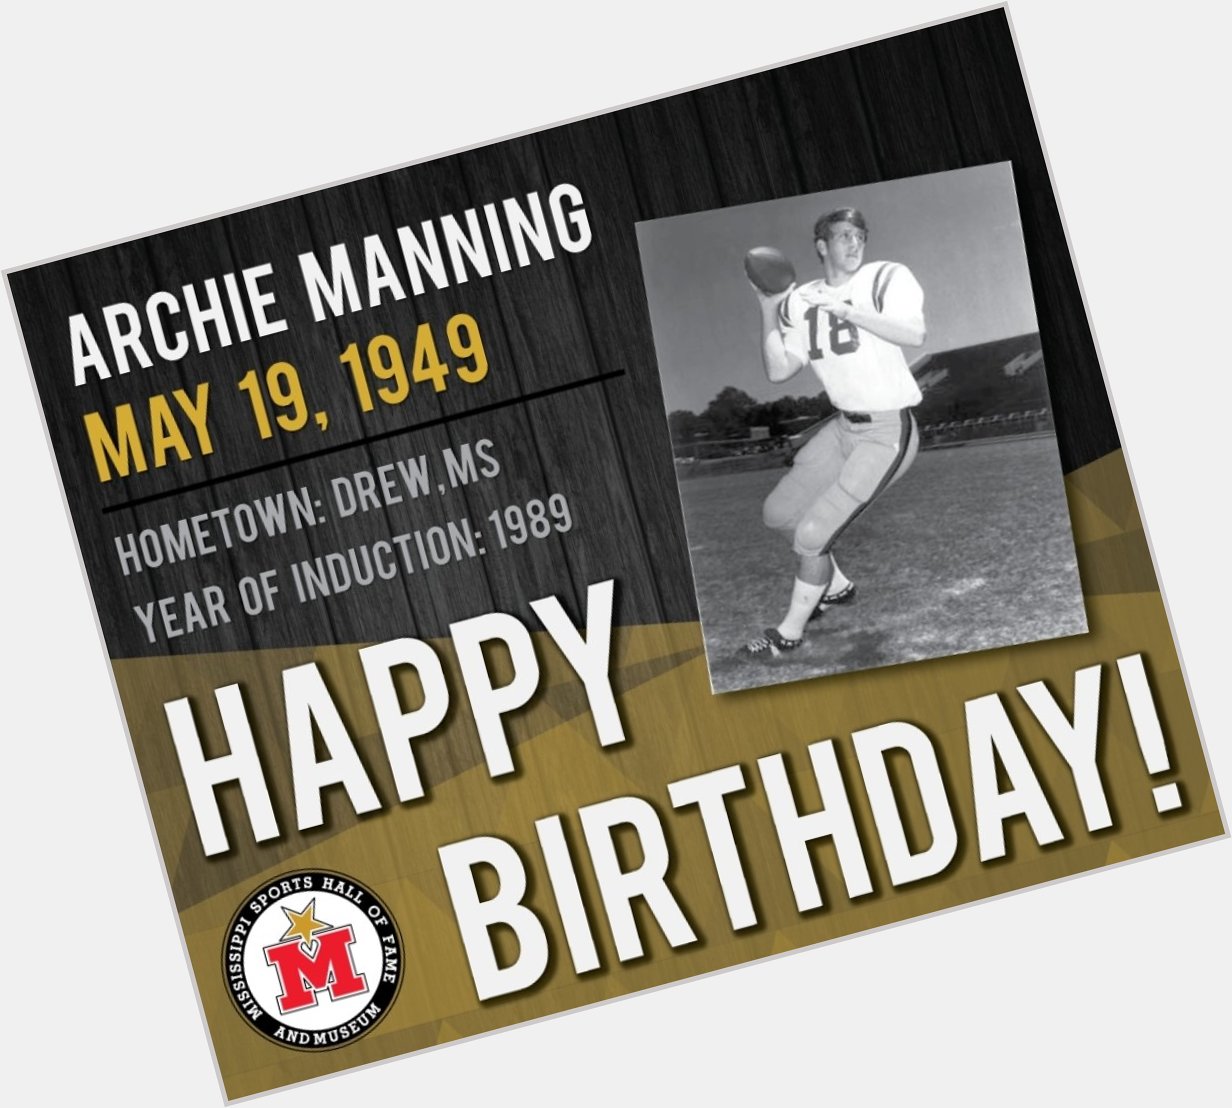 Happy Birthday Archie Manning!     